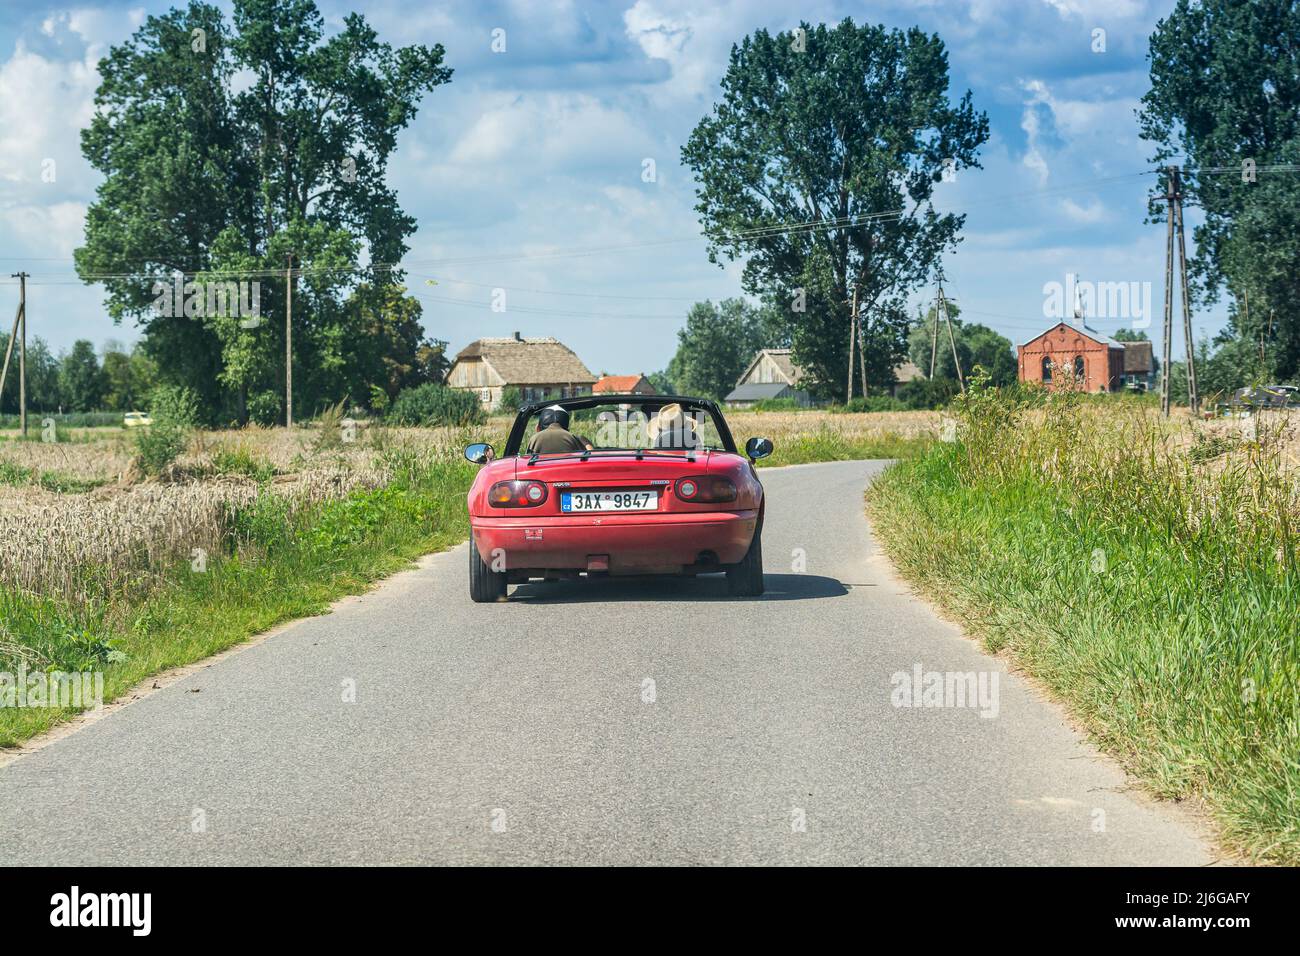 Wiaczemin Polski, Pologne - 12 août 2021. Voiture décapotable rétro rouge vintage sur une petite route entre les villages Banque D'Images